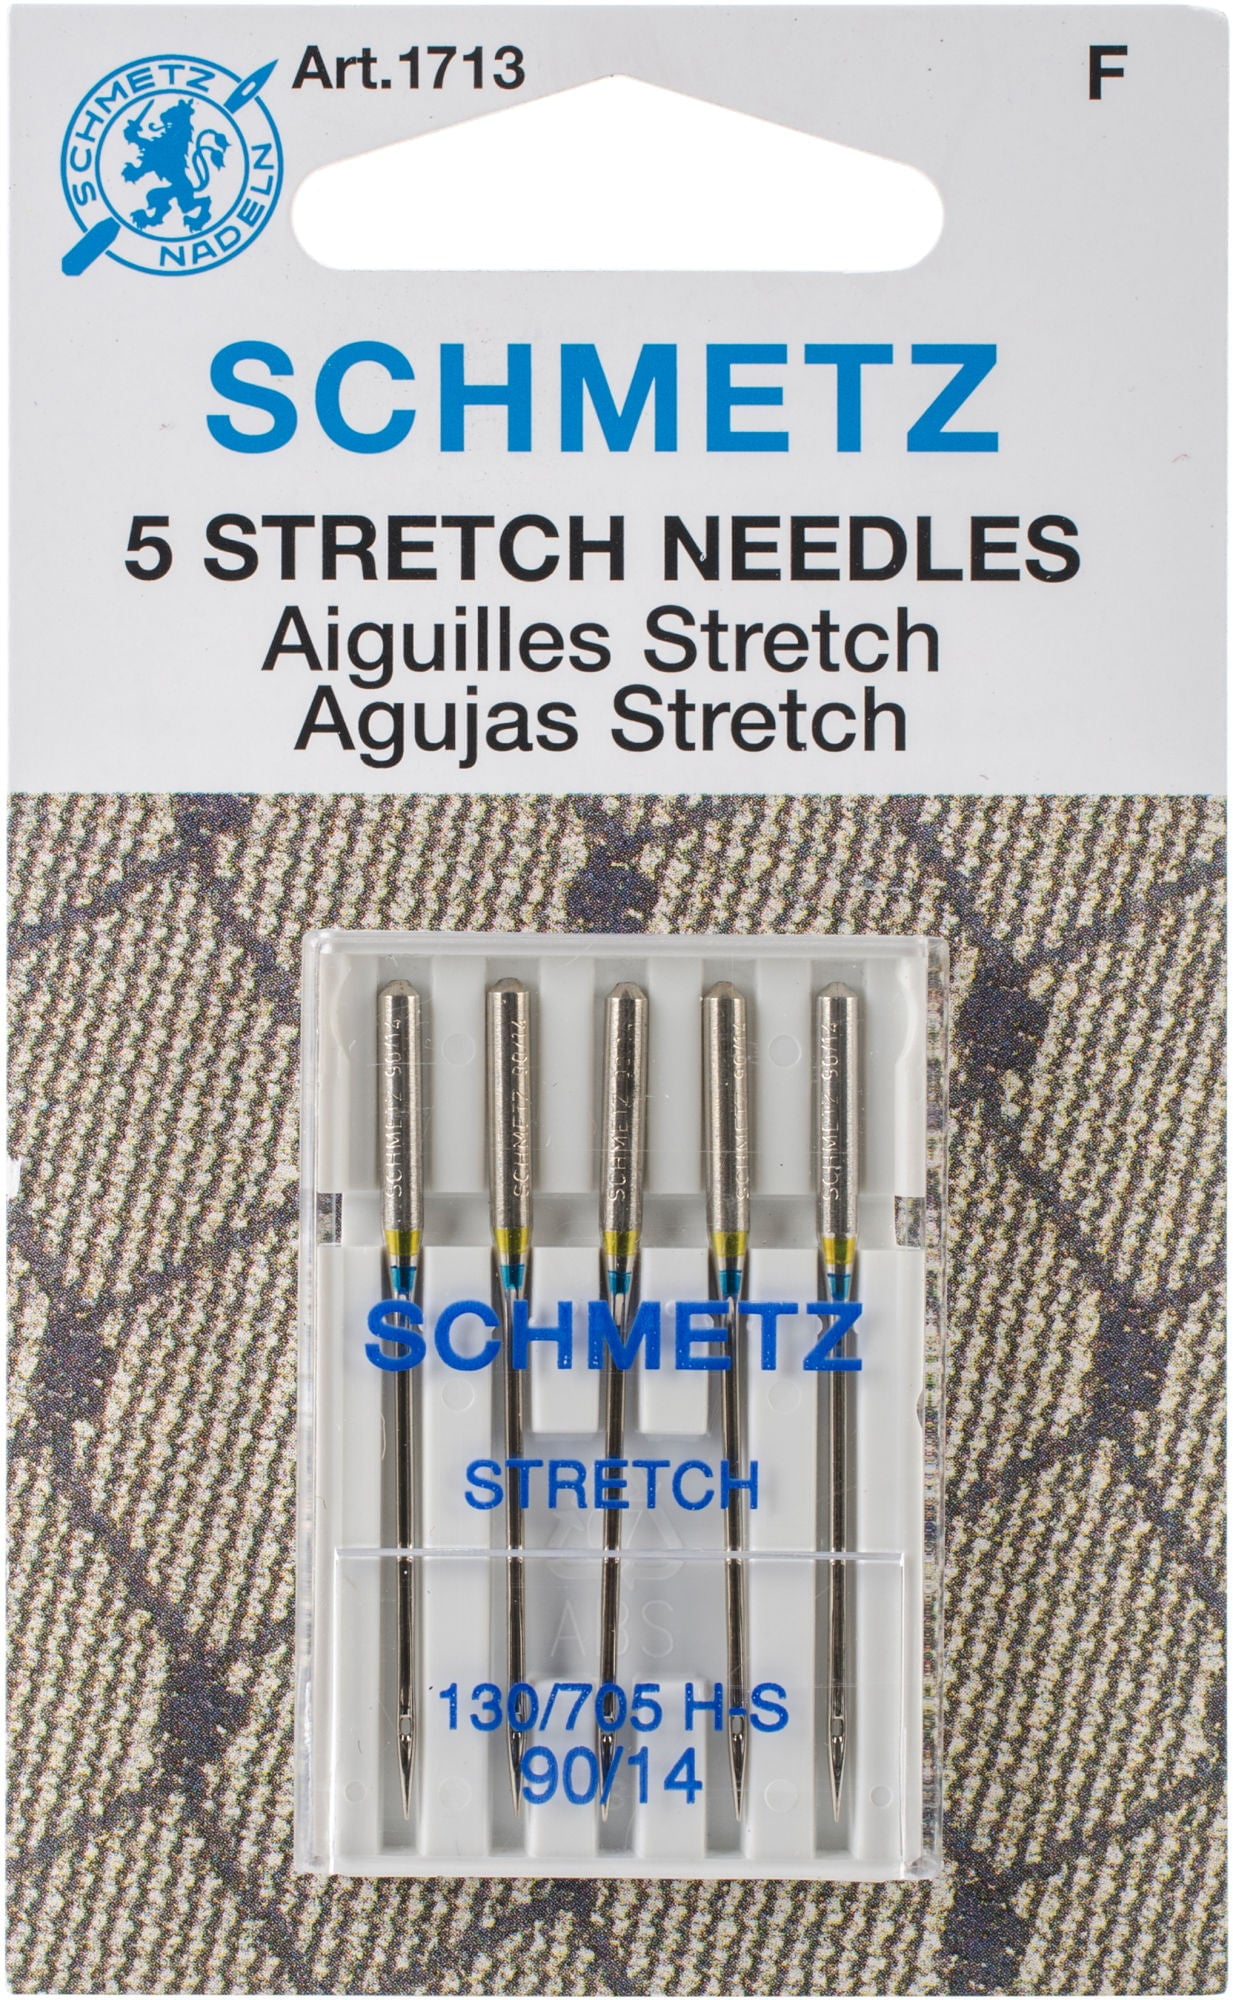 Schmetz Jersey-Knit Size 90/14 5 pk Ball Point Sewing Machine Needle 